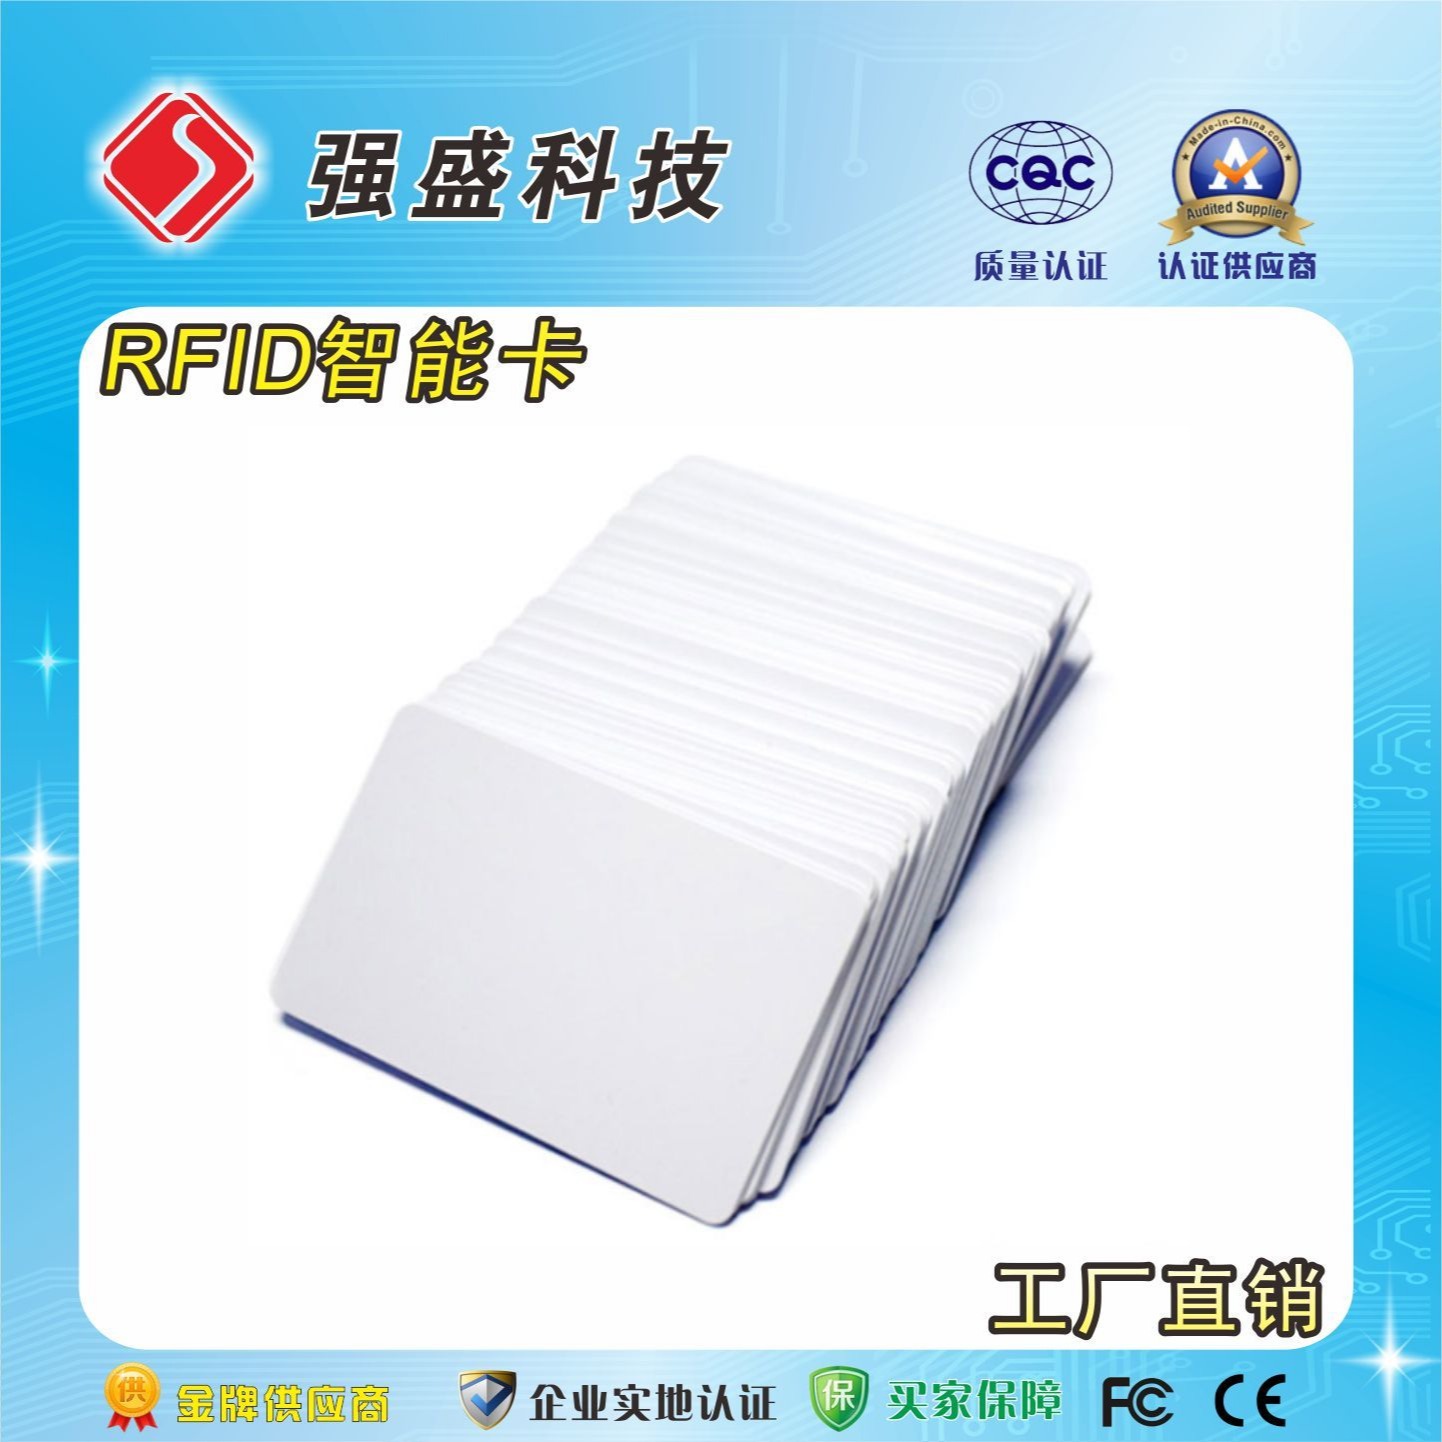 厂家直供CPU白卡 复旦FM1208-10 门禁CPU卡